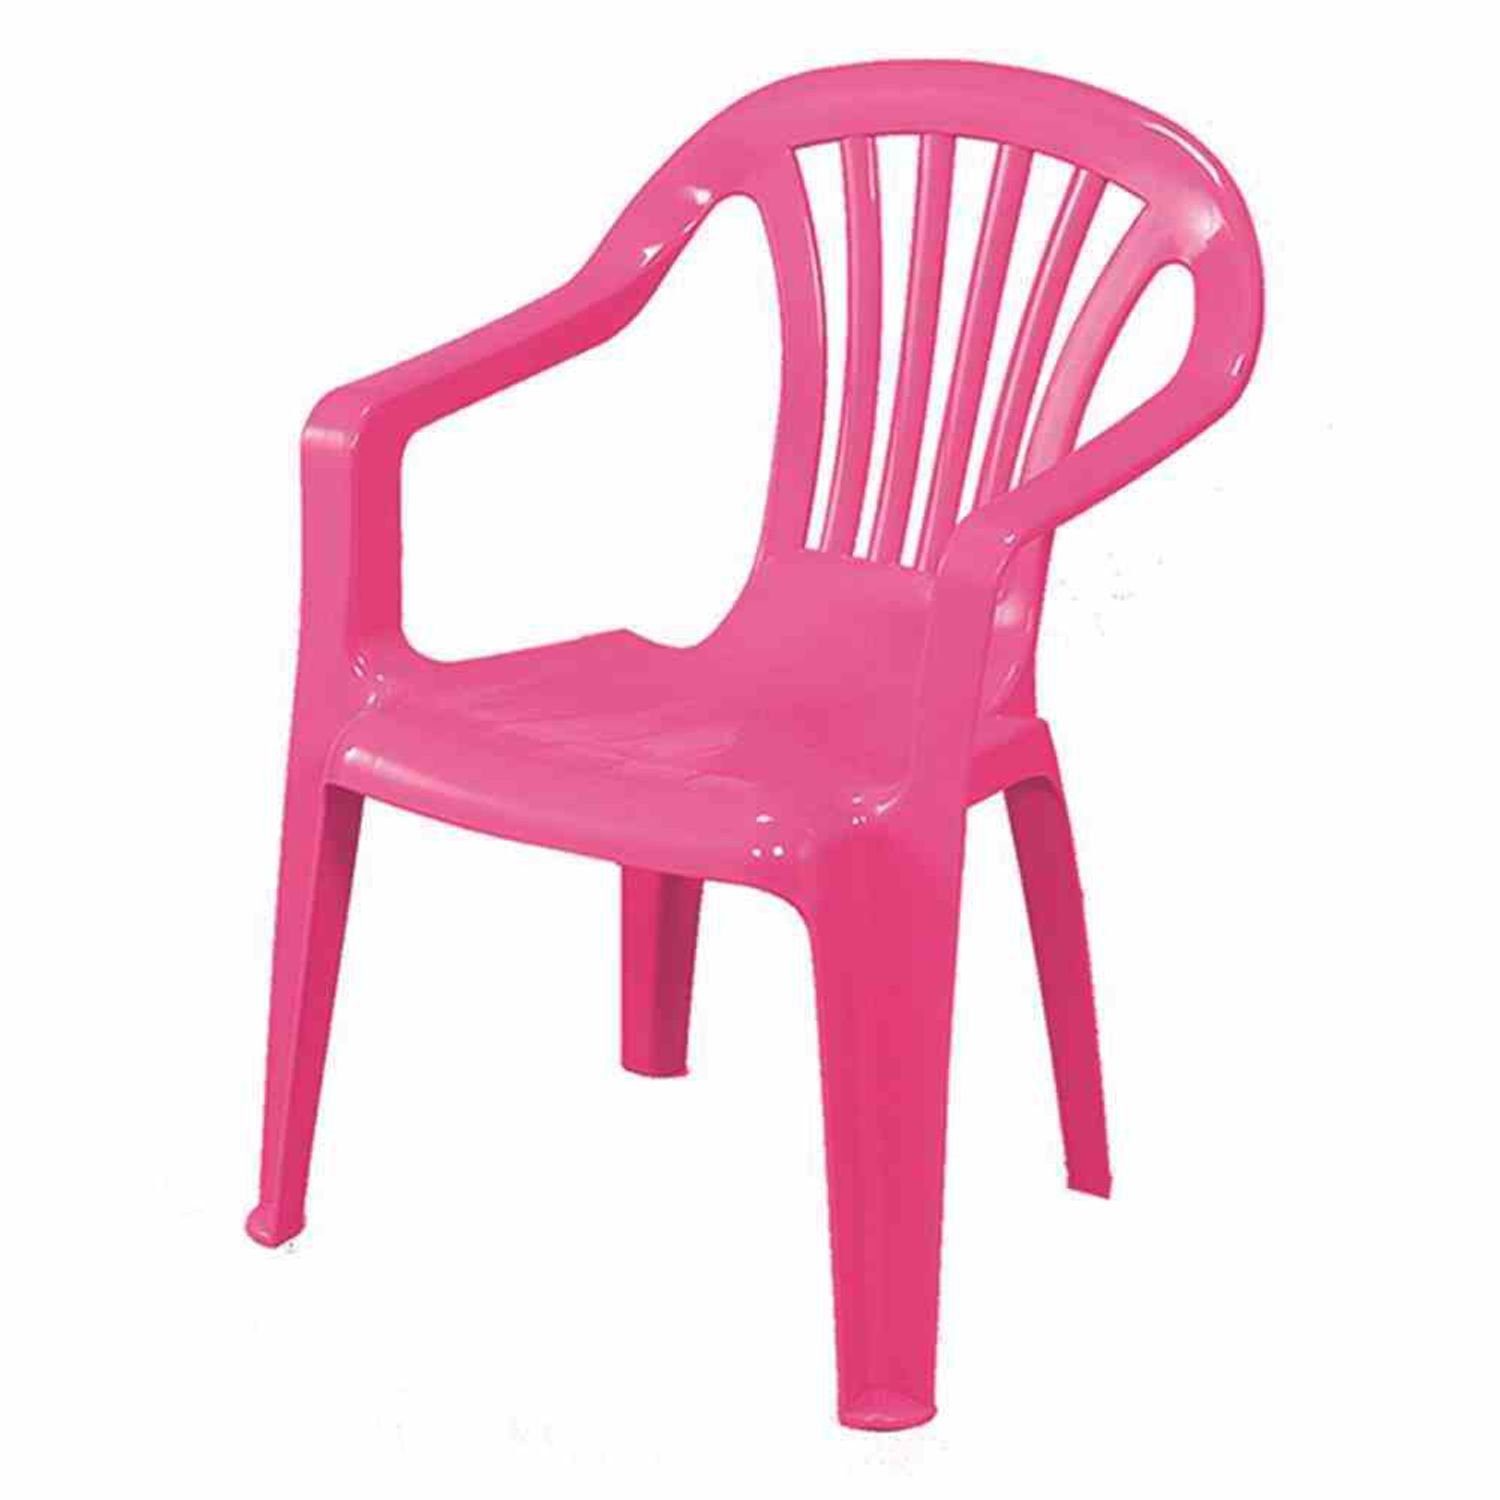 Ipae-Progarden Kinderstuhl Kinderstuhl, pink Vollkunststoff, Monoblock, stapelbar